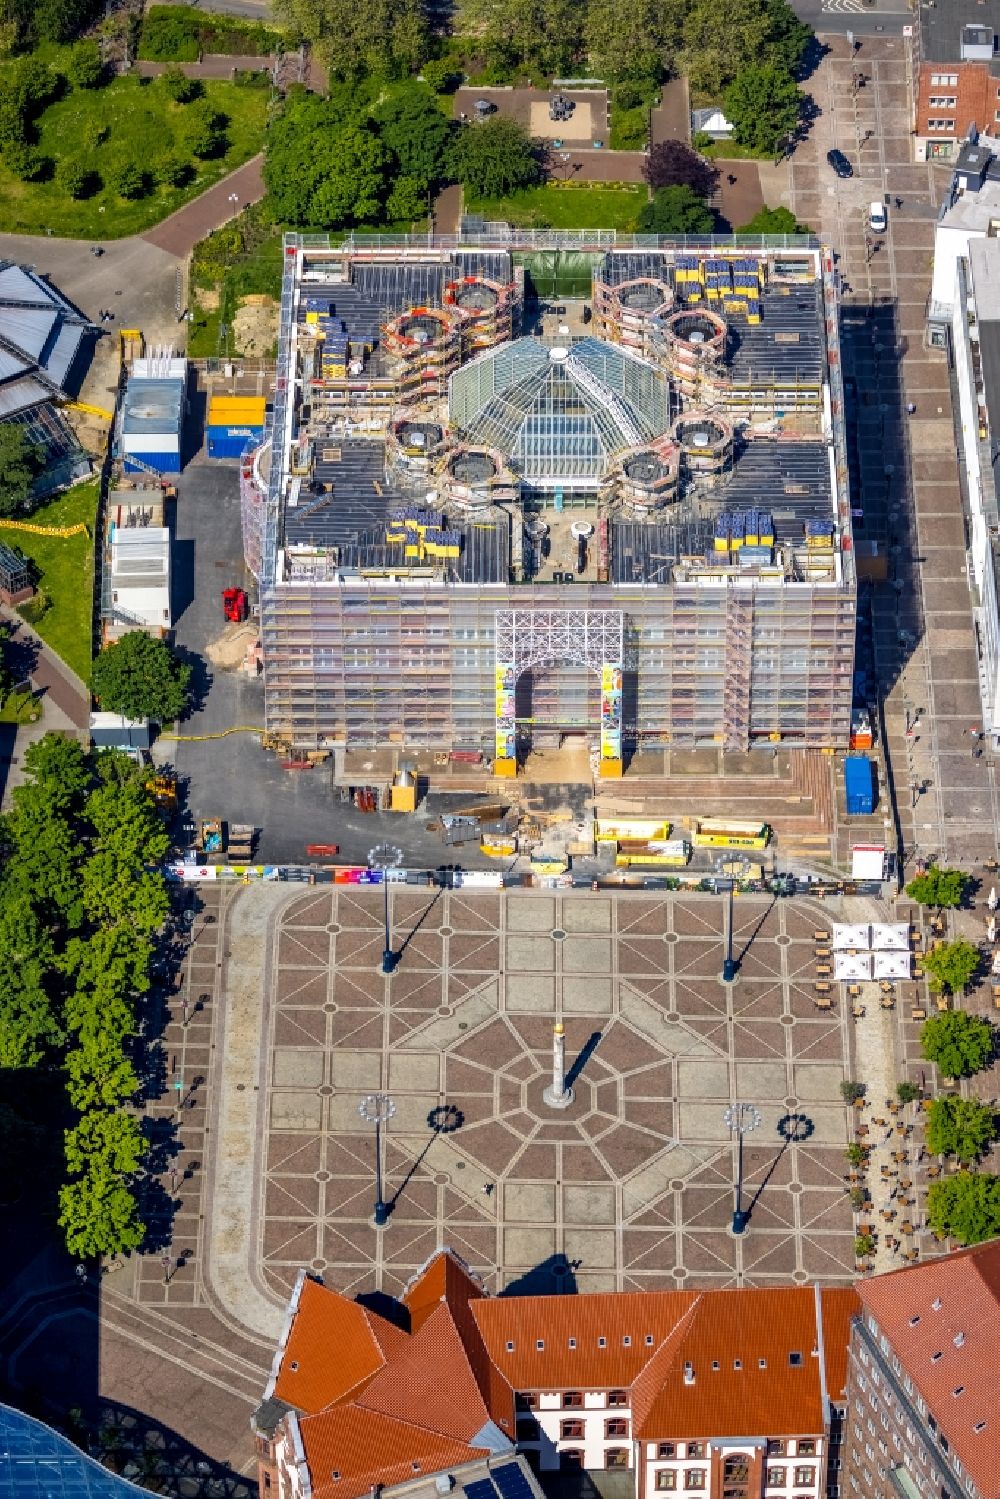 Dortmund aus der Vogelperspektive: Gebäude der Stadtverwaltung - Rathaus am Marktplatz in Dortmund im Bundesland Nordrhein-Westfalen, Deutschland